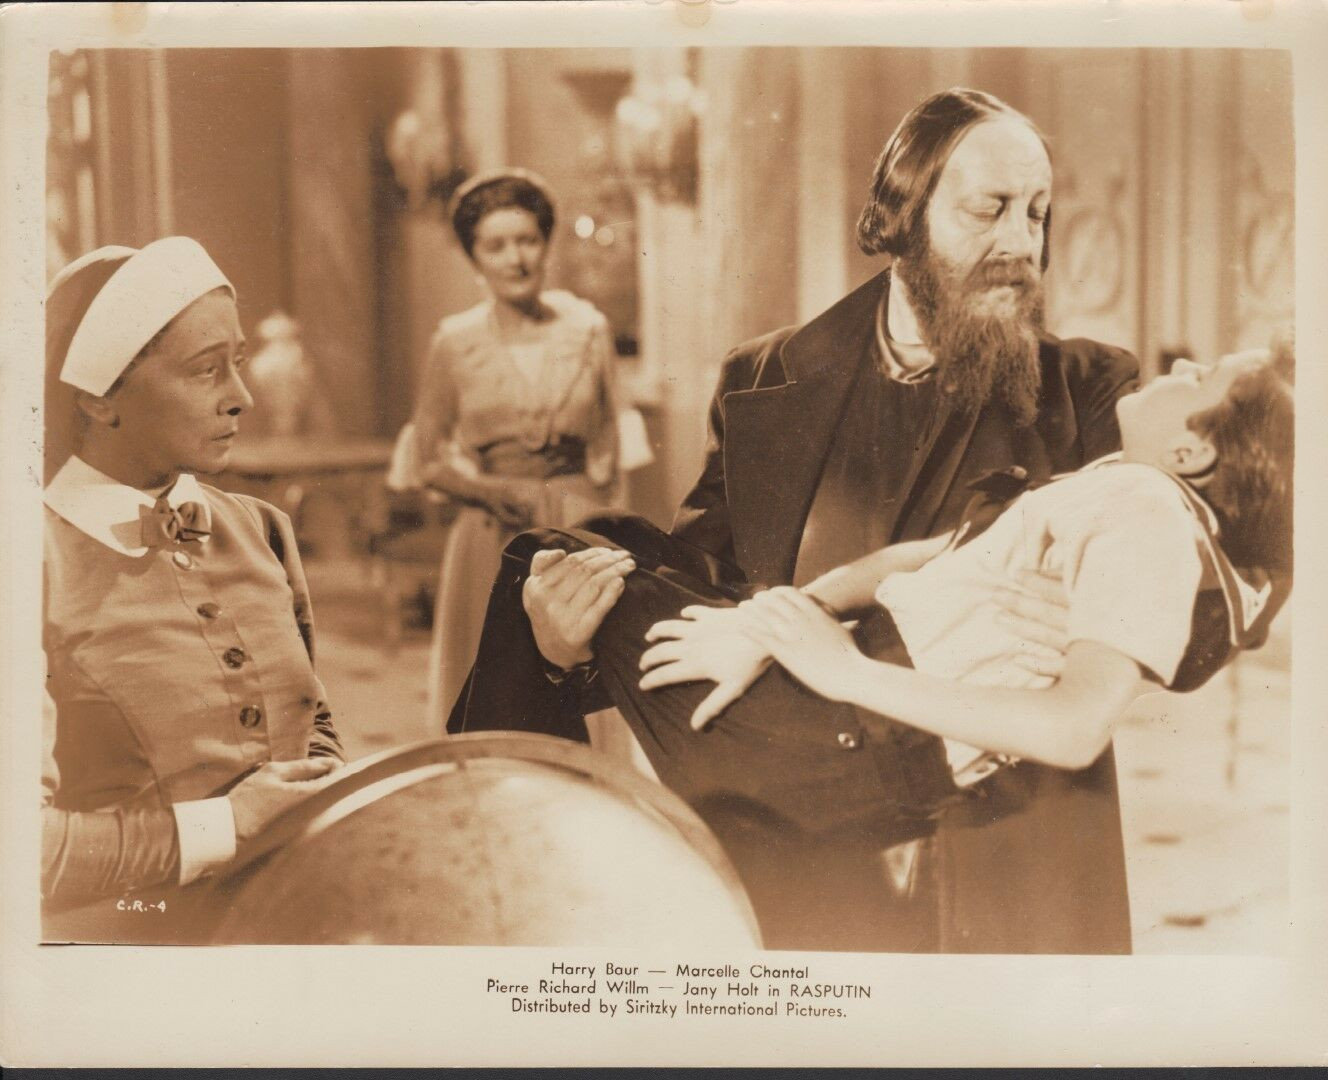 Rasputin - 1938 - Filmclub Edition